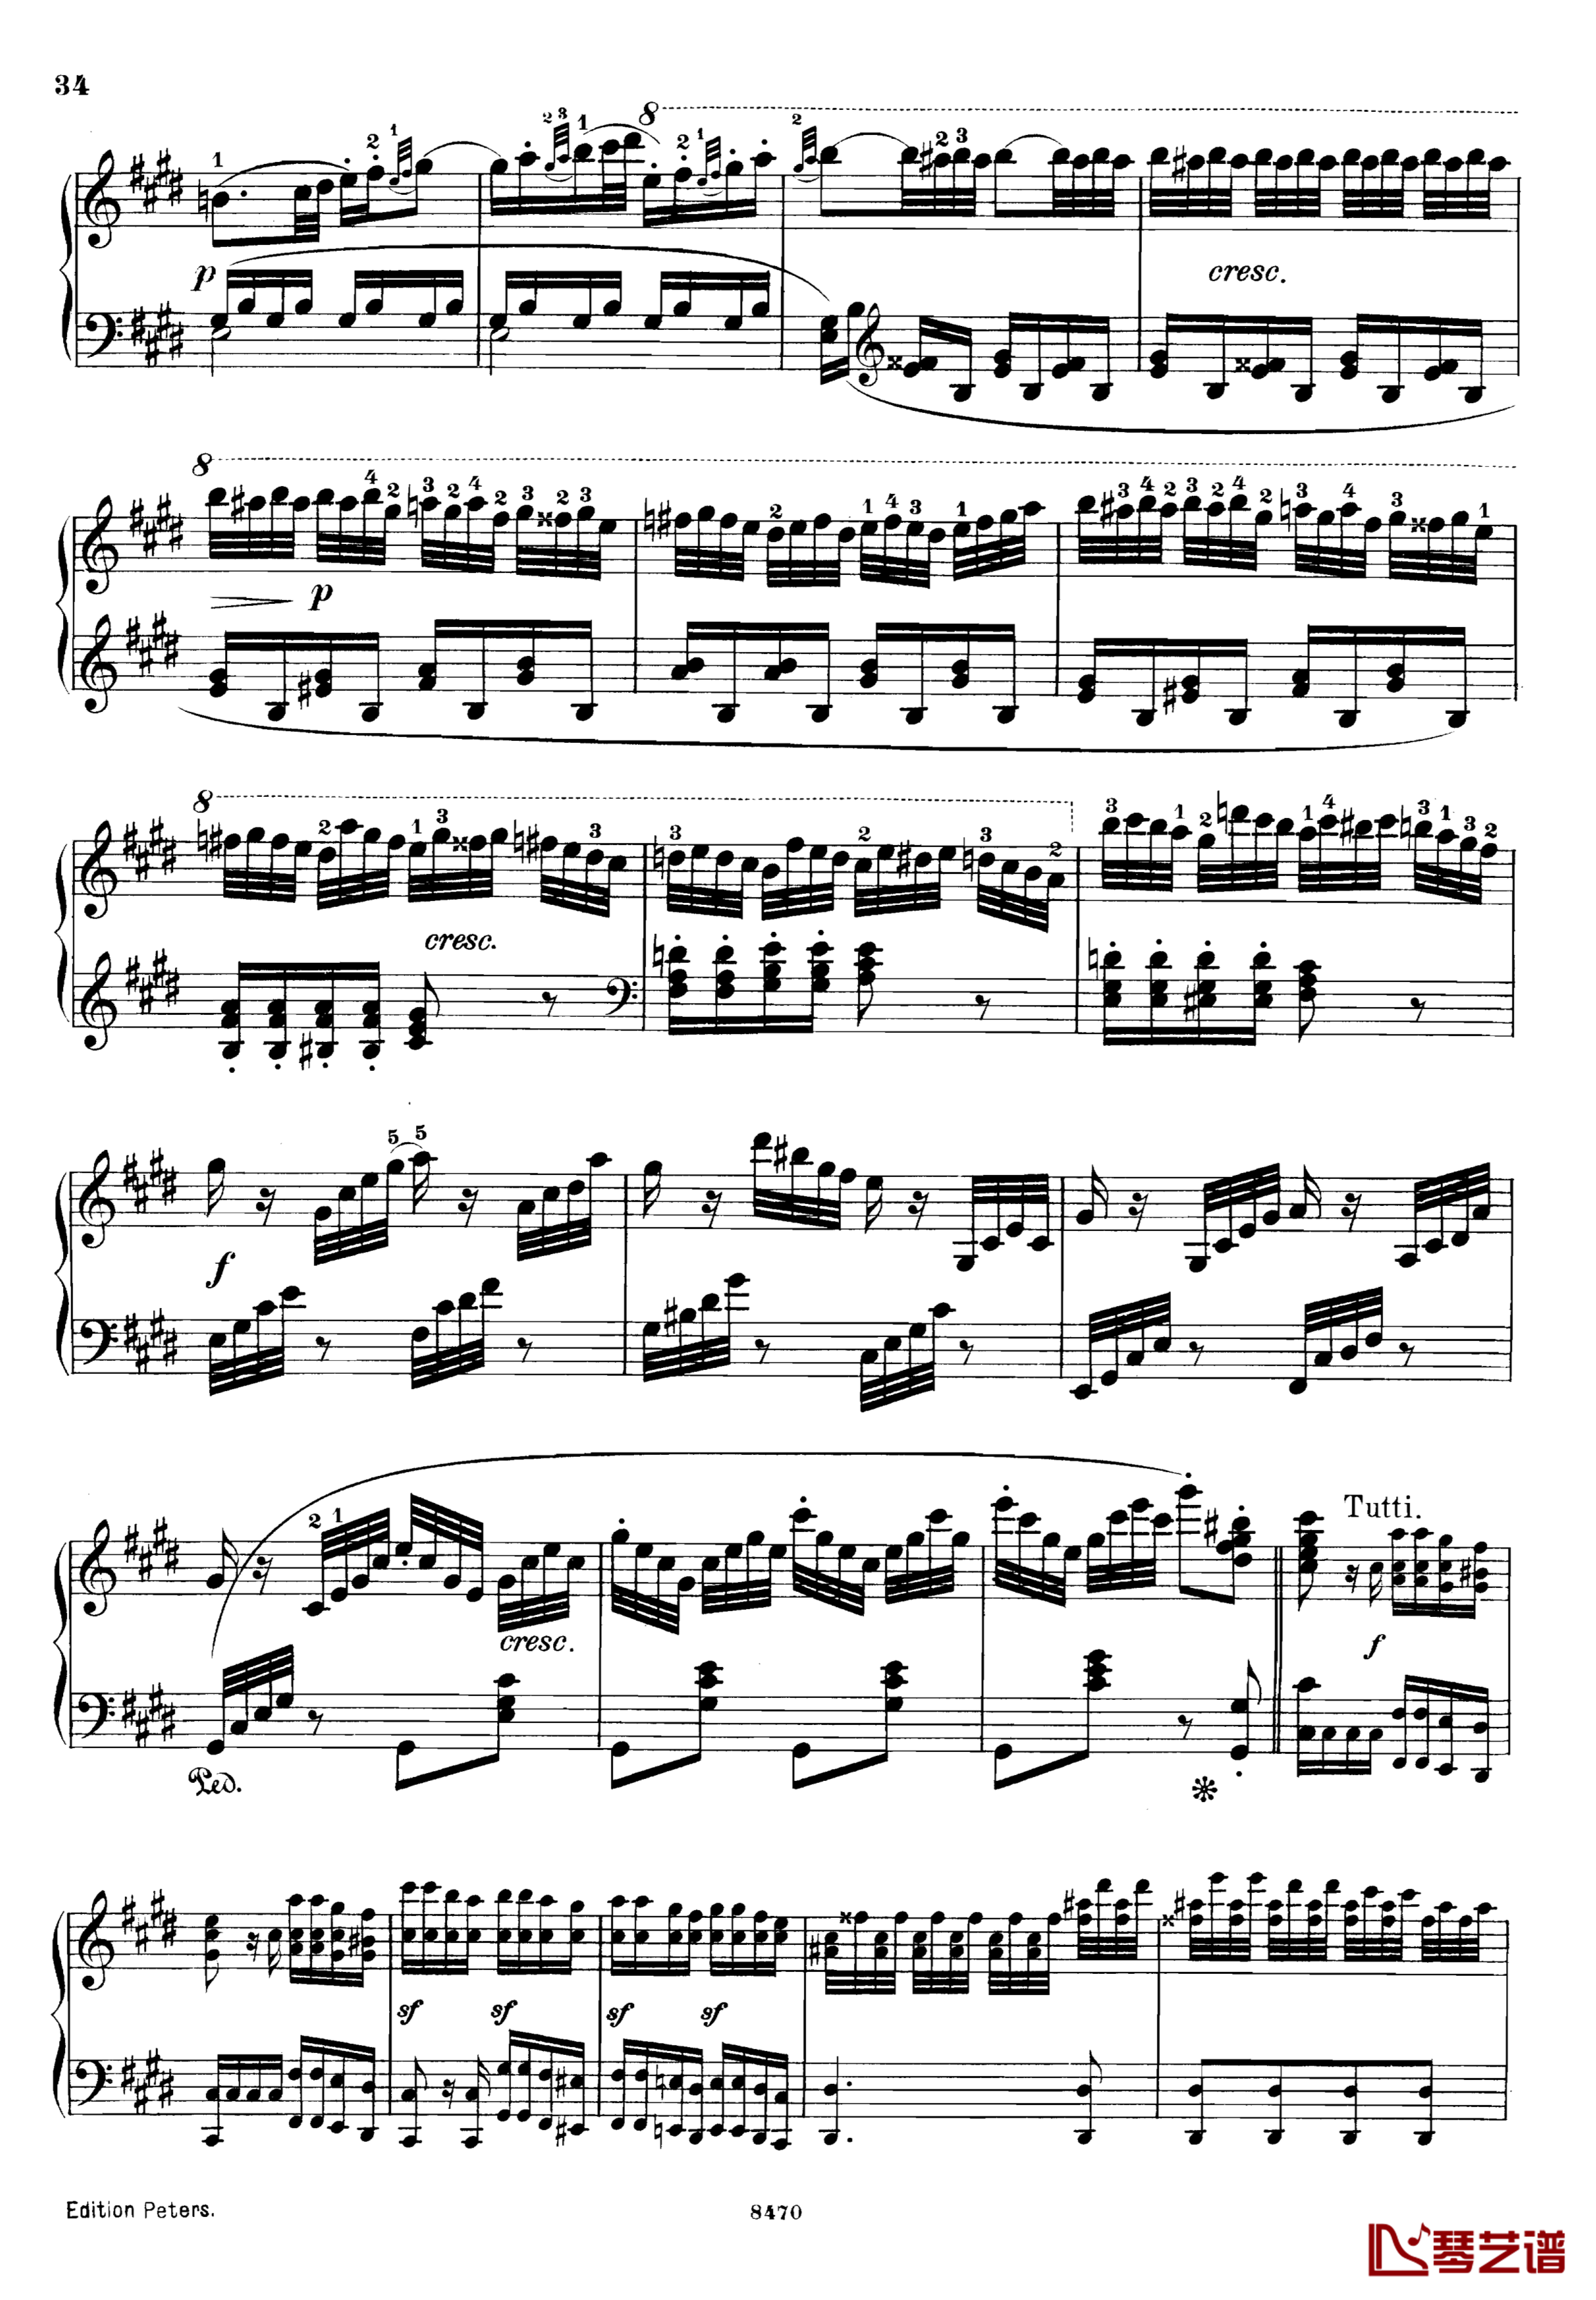 升c小调第三钢琴协奏曲Op.55钢琴谱-克里斯蒂安-里斯34